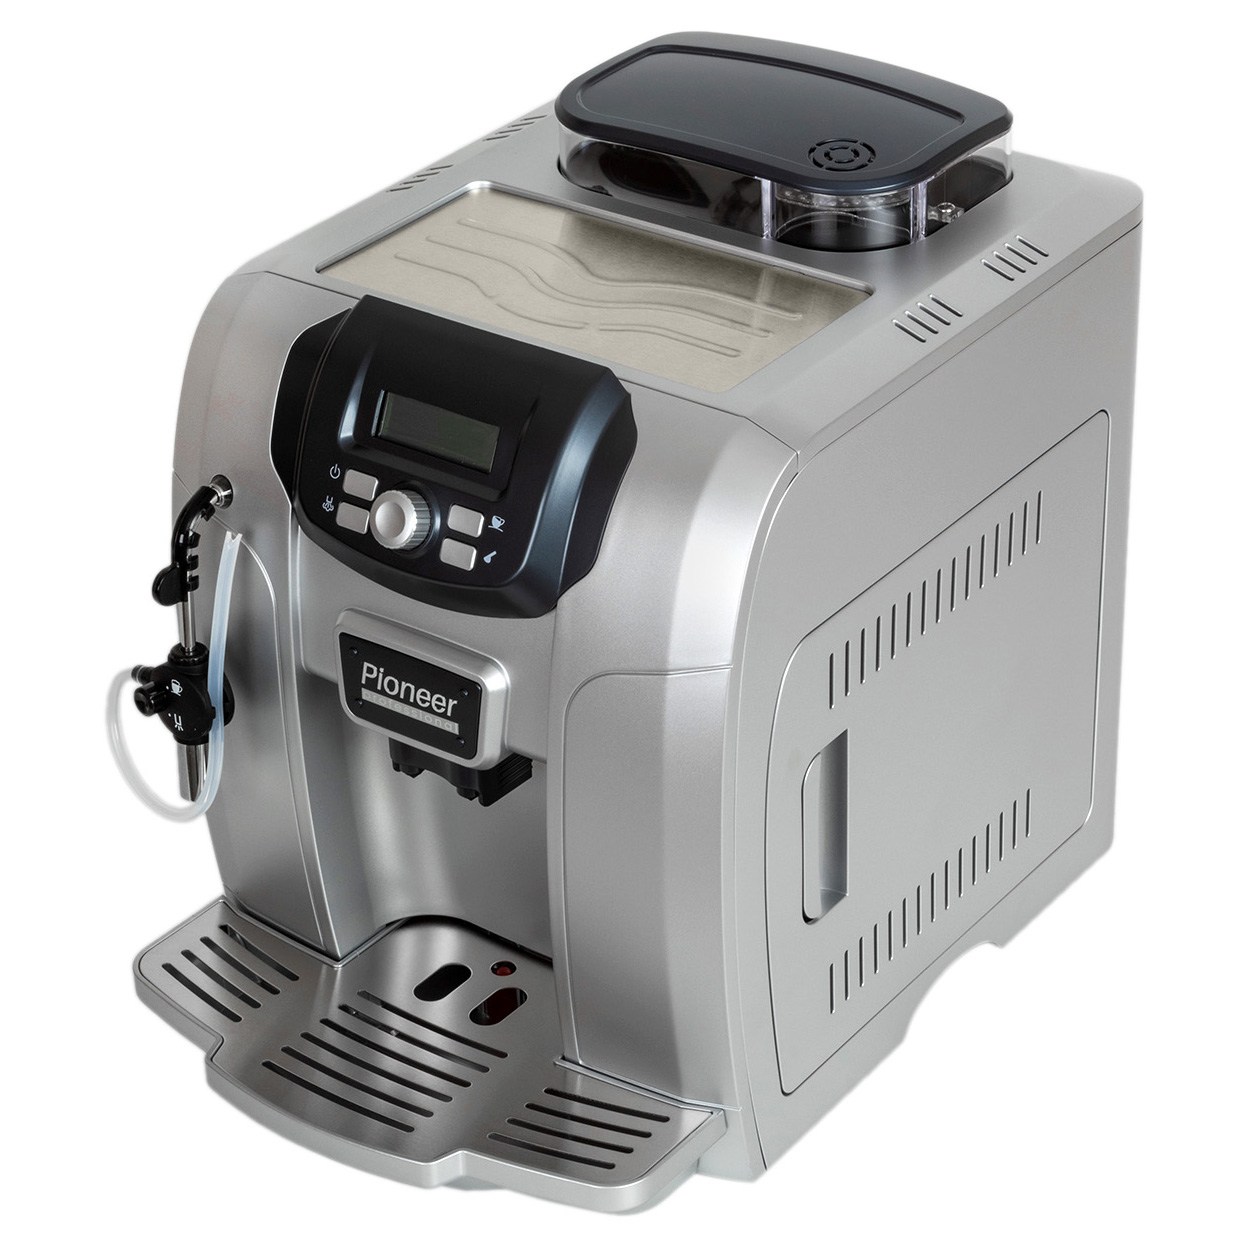 Автоматическая кофемашина Pioneer CMA015, silver